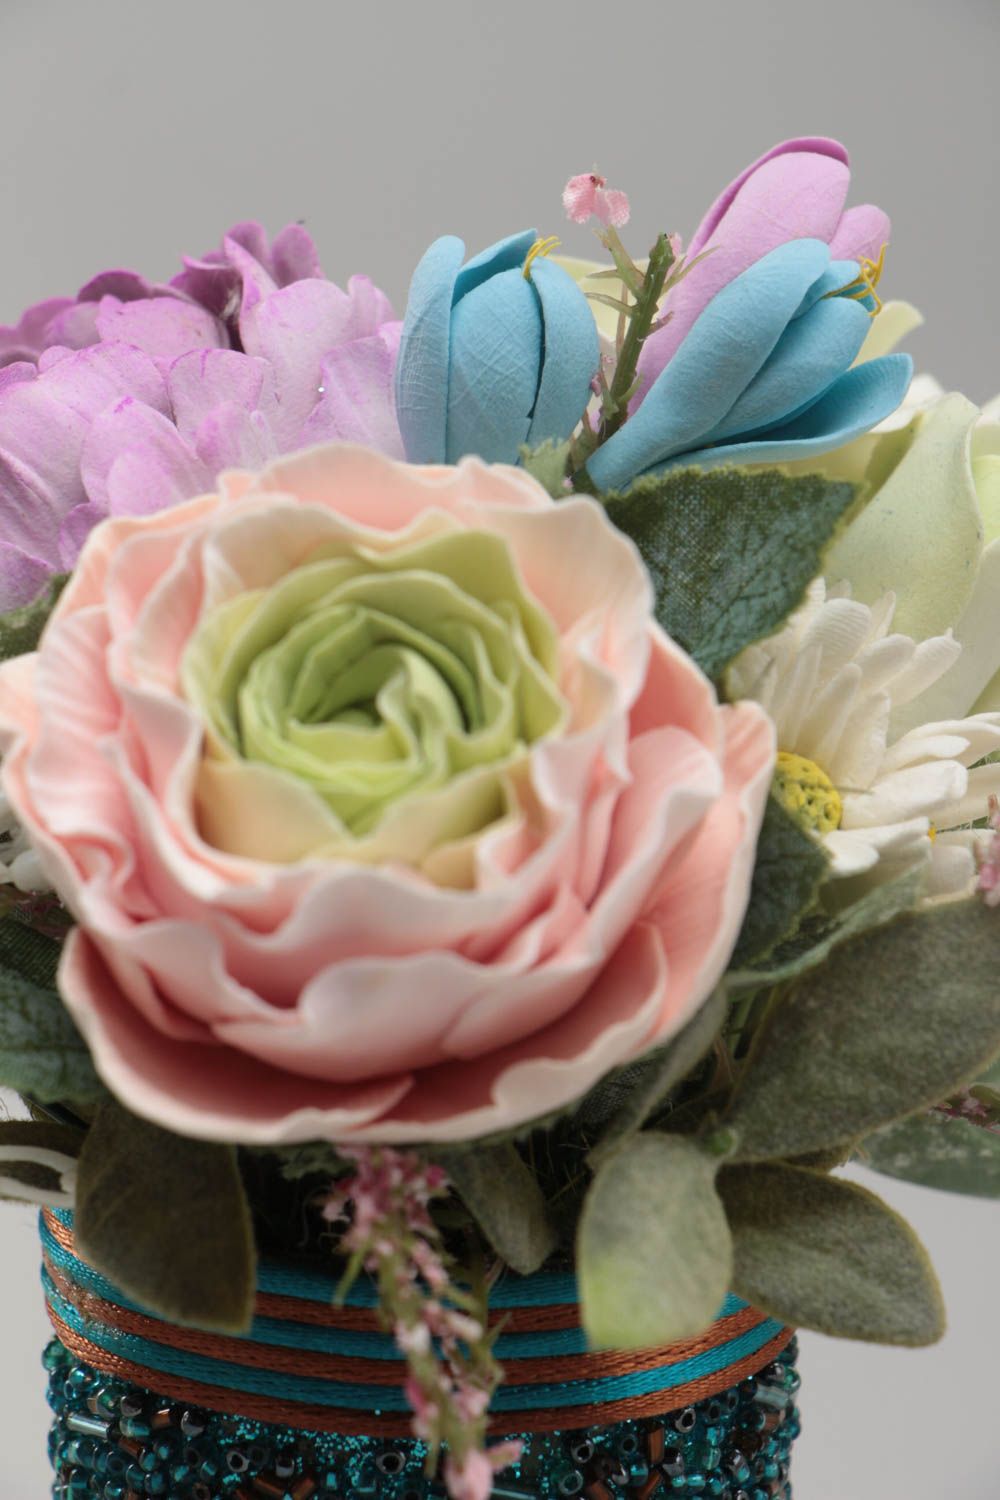 Цветы из полимерной глины ручной работы красивые пионы и розы оригинальные для декора фото 4